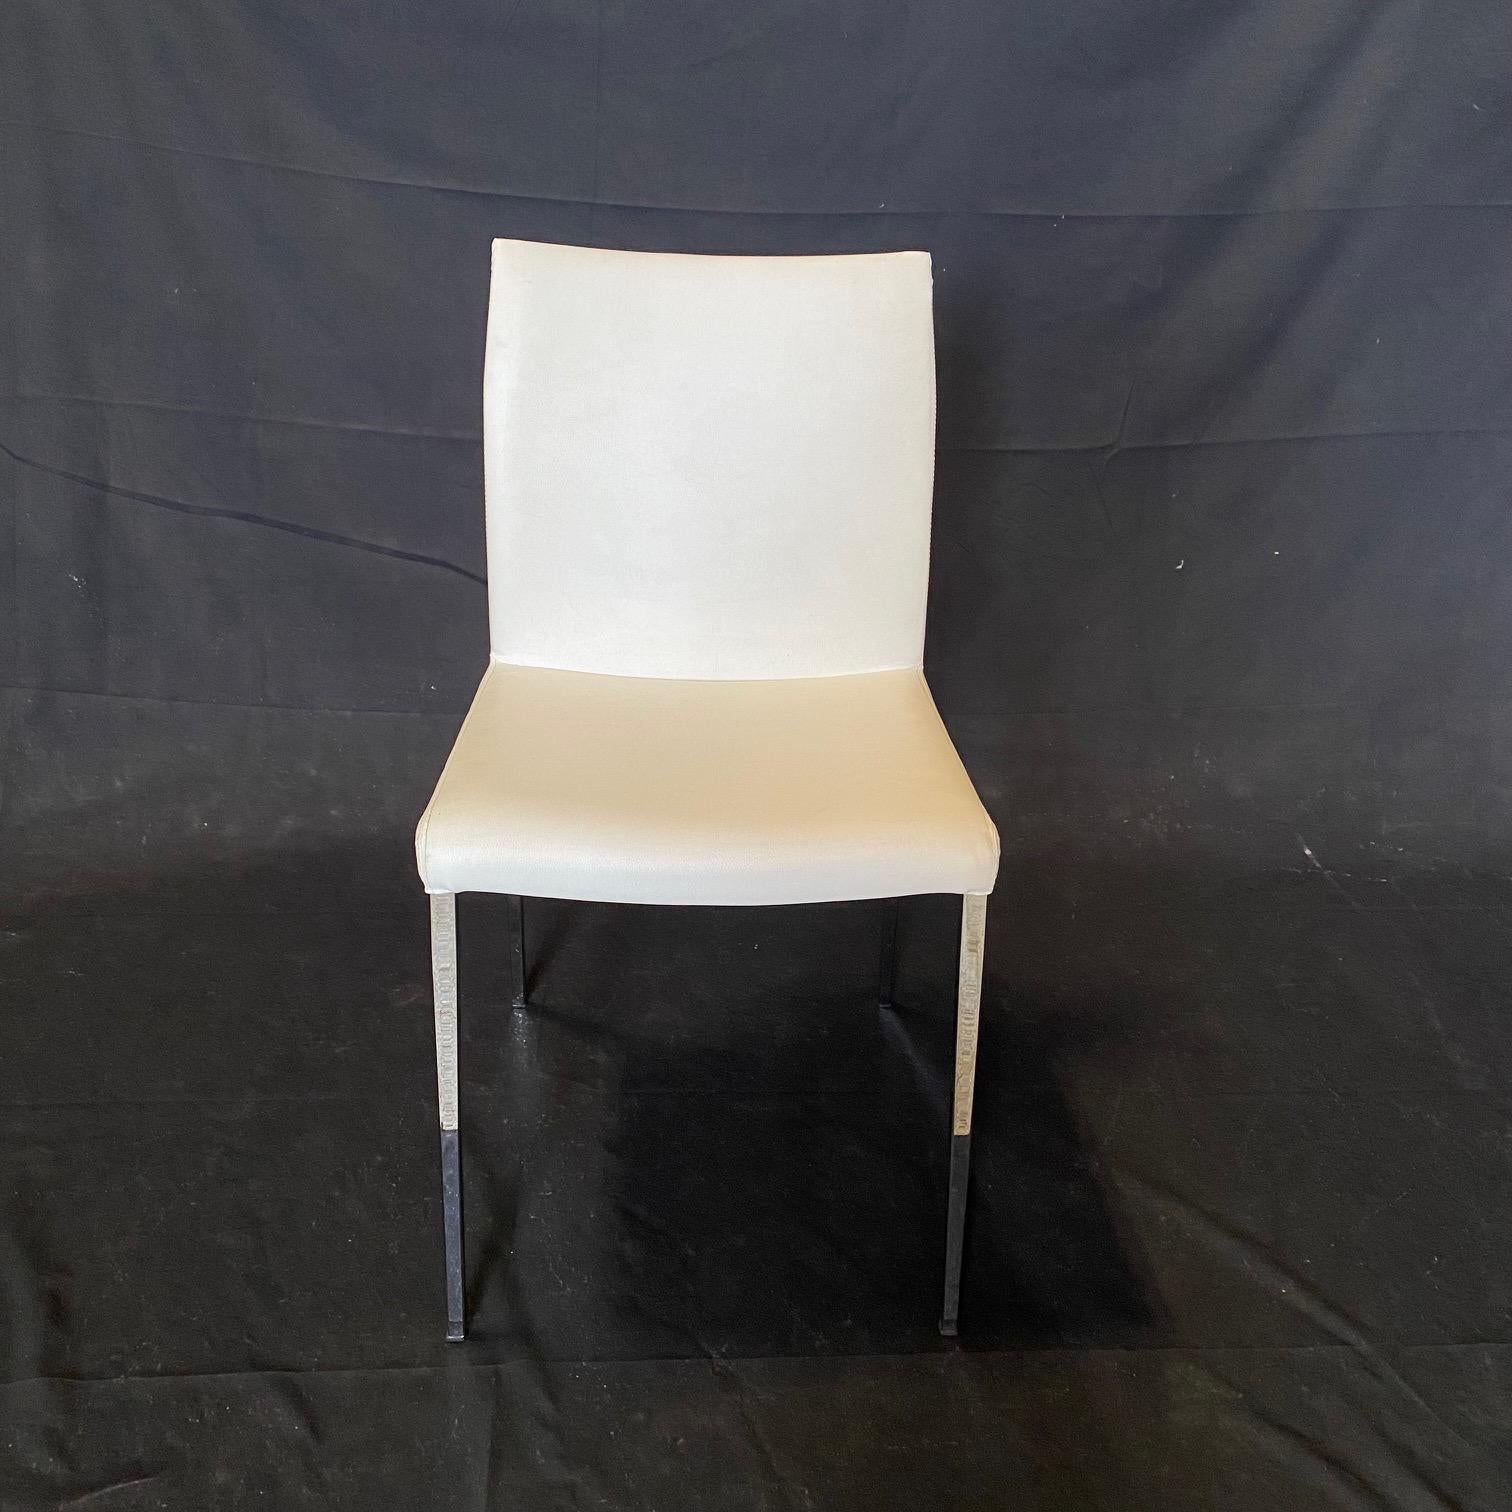 Chaises de salle à manger en cuir blanc vintage, élégantes et glamour, de Cattelan Italie. Confortable avec un cuir joliment cousu. Les chaises sont magnifiquement conçues et fabriquées à partir de matériaux de qualité. Les pieds chromés sont fins